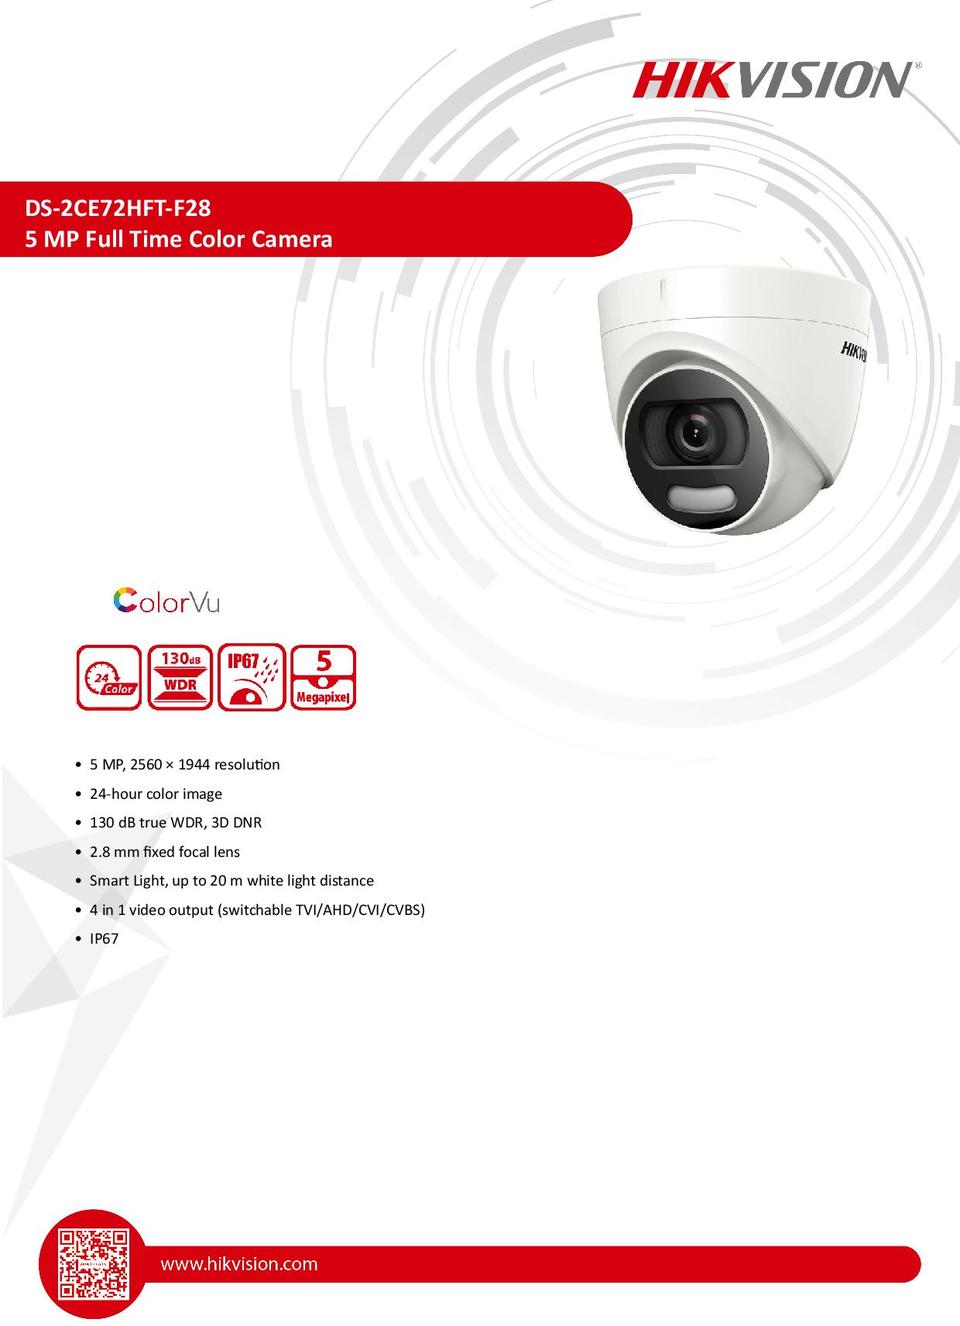 Hikvision DS-2CE72HFT-F28 HD-TVI ColorVu 5 Megapixel Turret Camera 2.8mm Lens 0